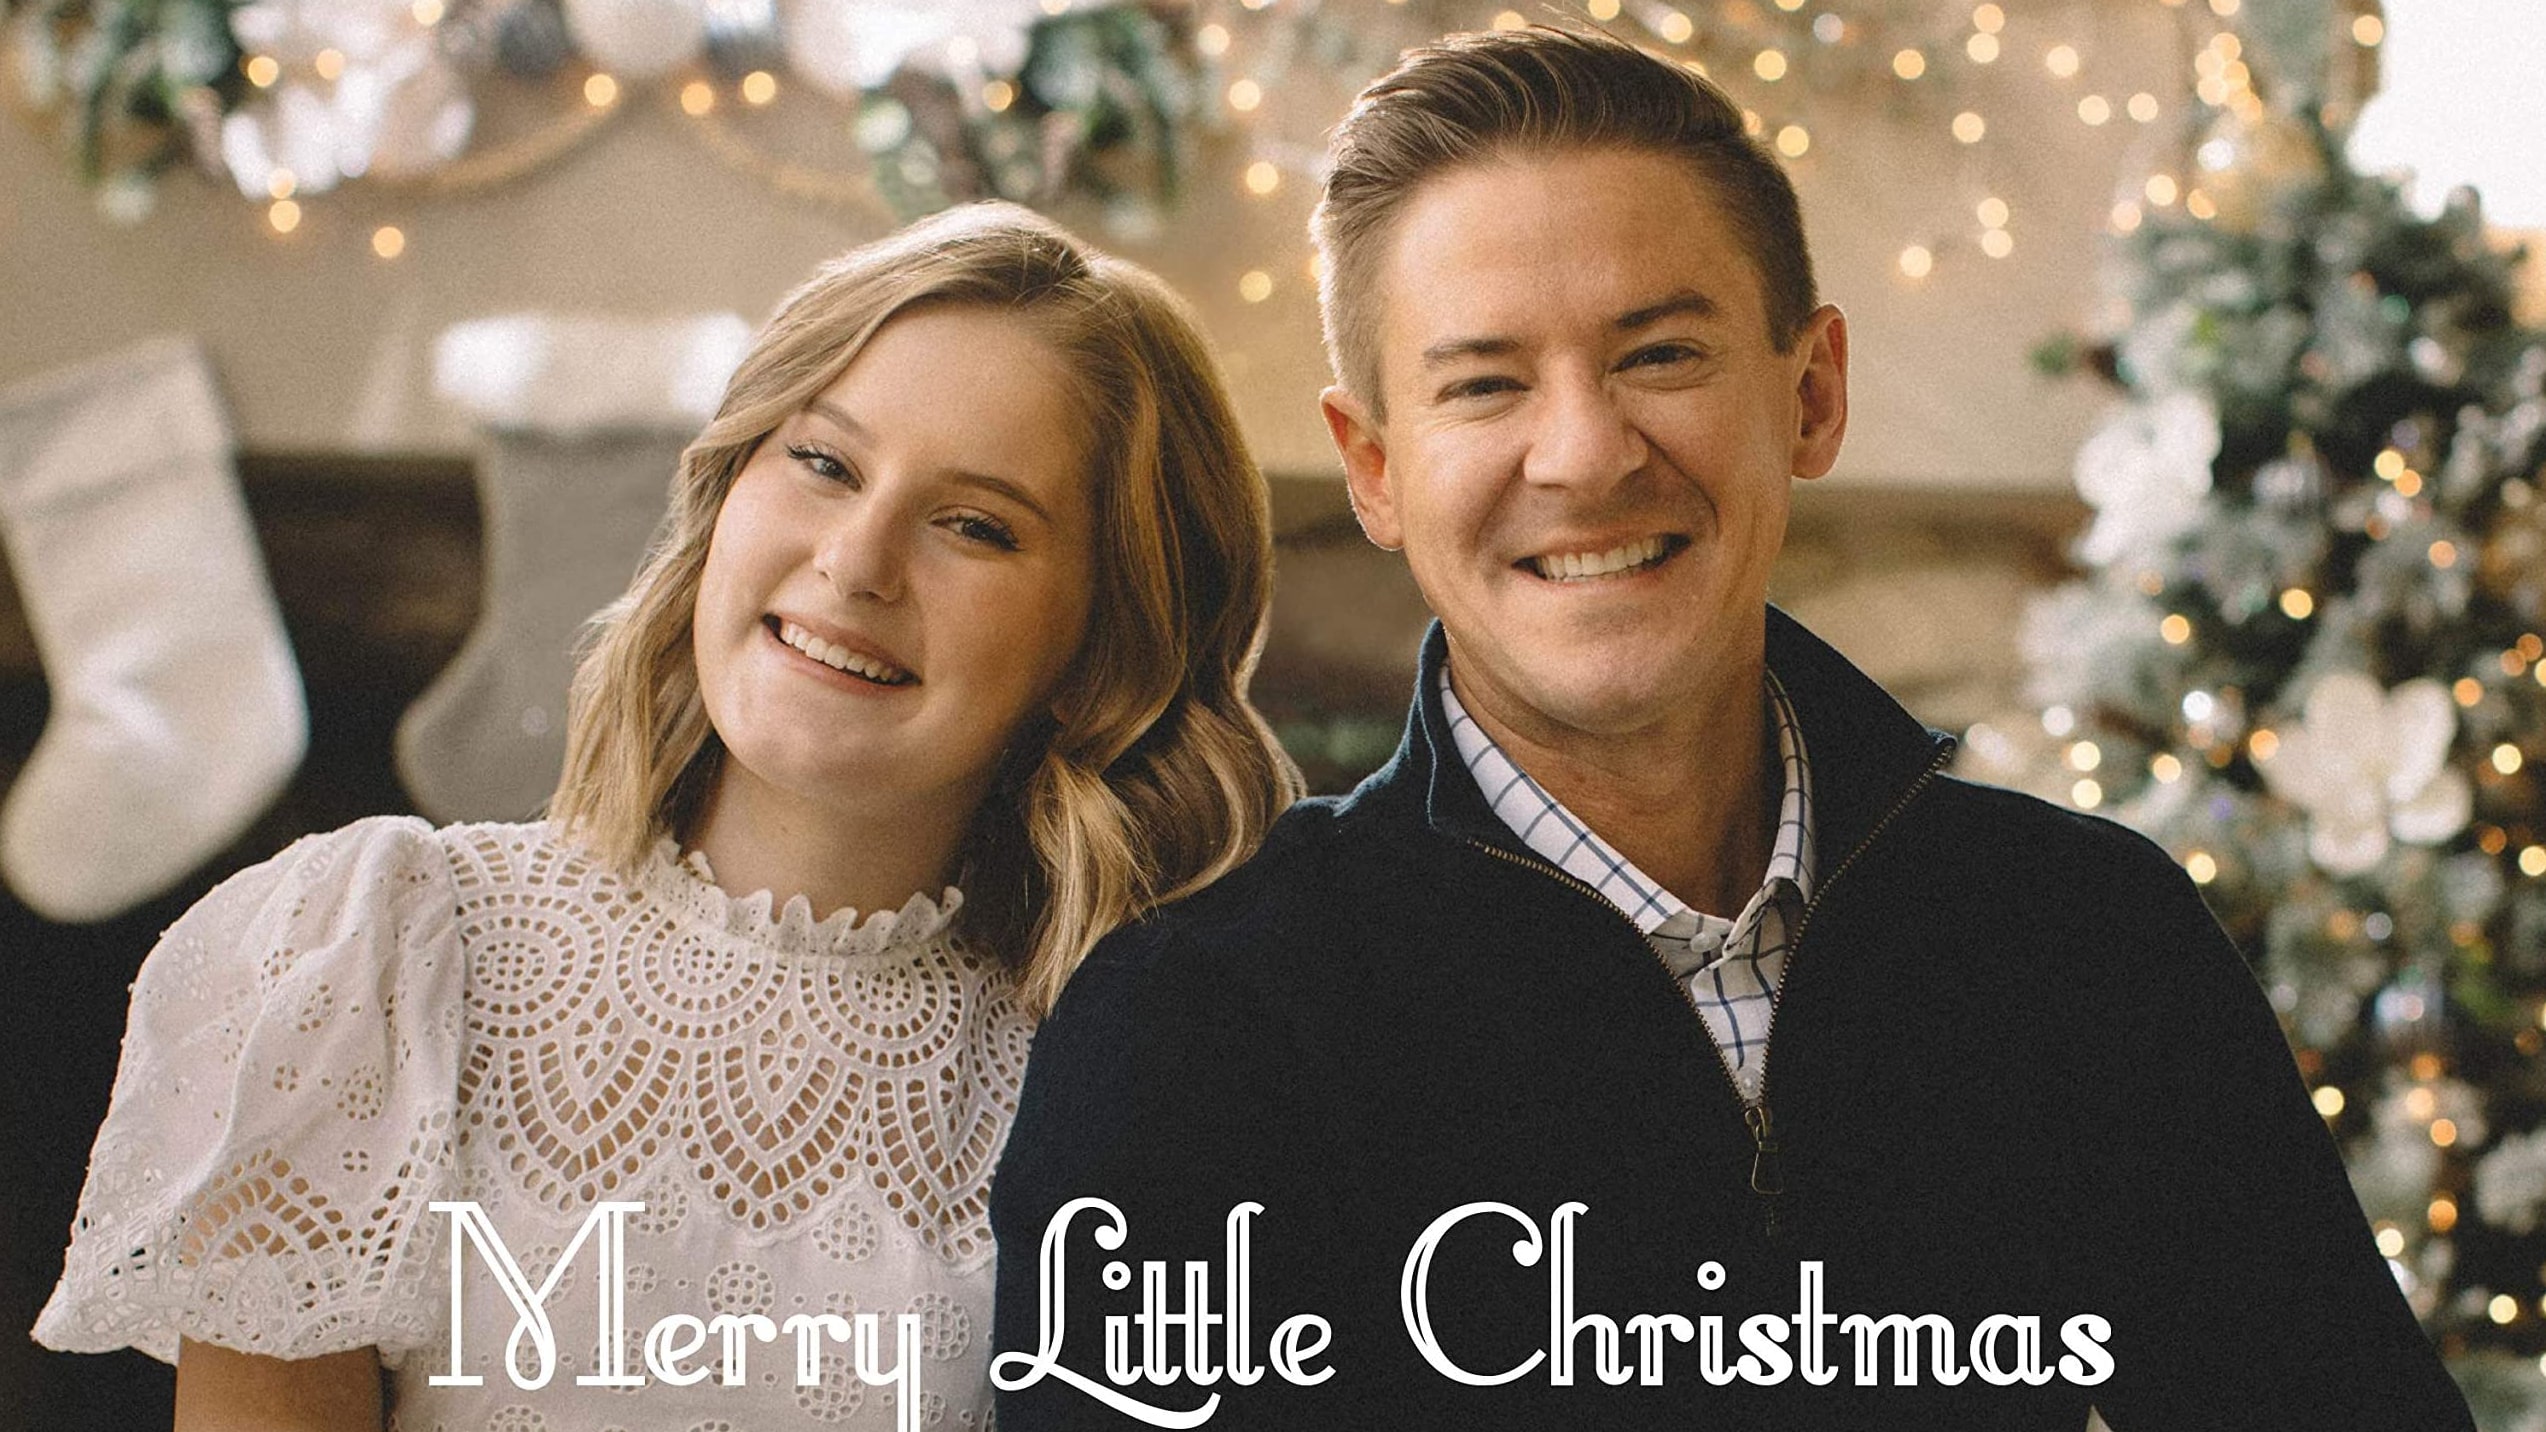 マットサバナ・ショー、クリスマスアルバム『Merry Little Christmas』リリースへ - VOICE 洋楽